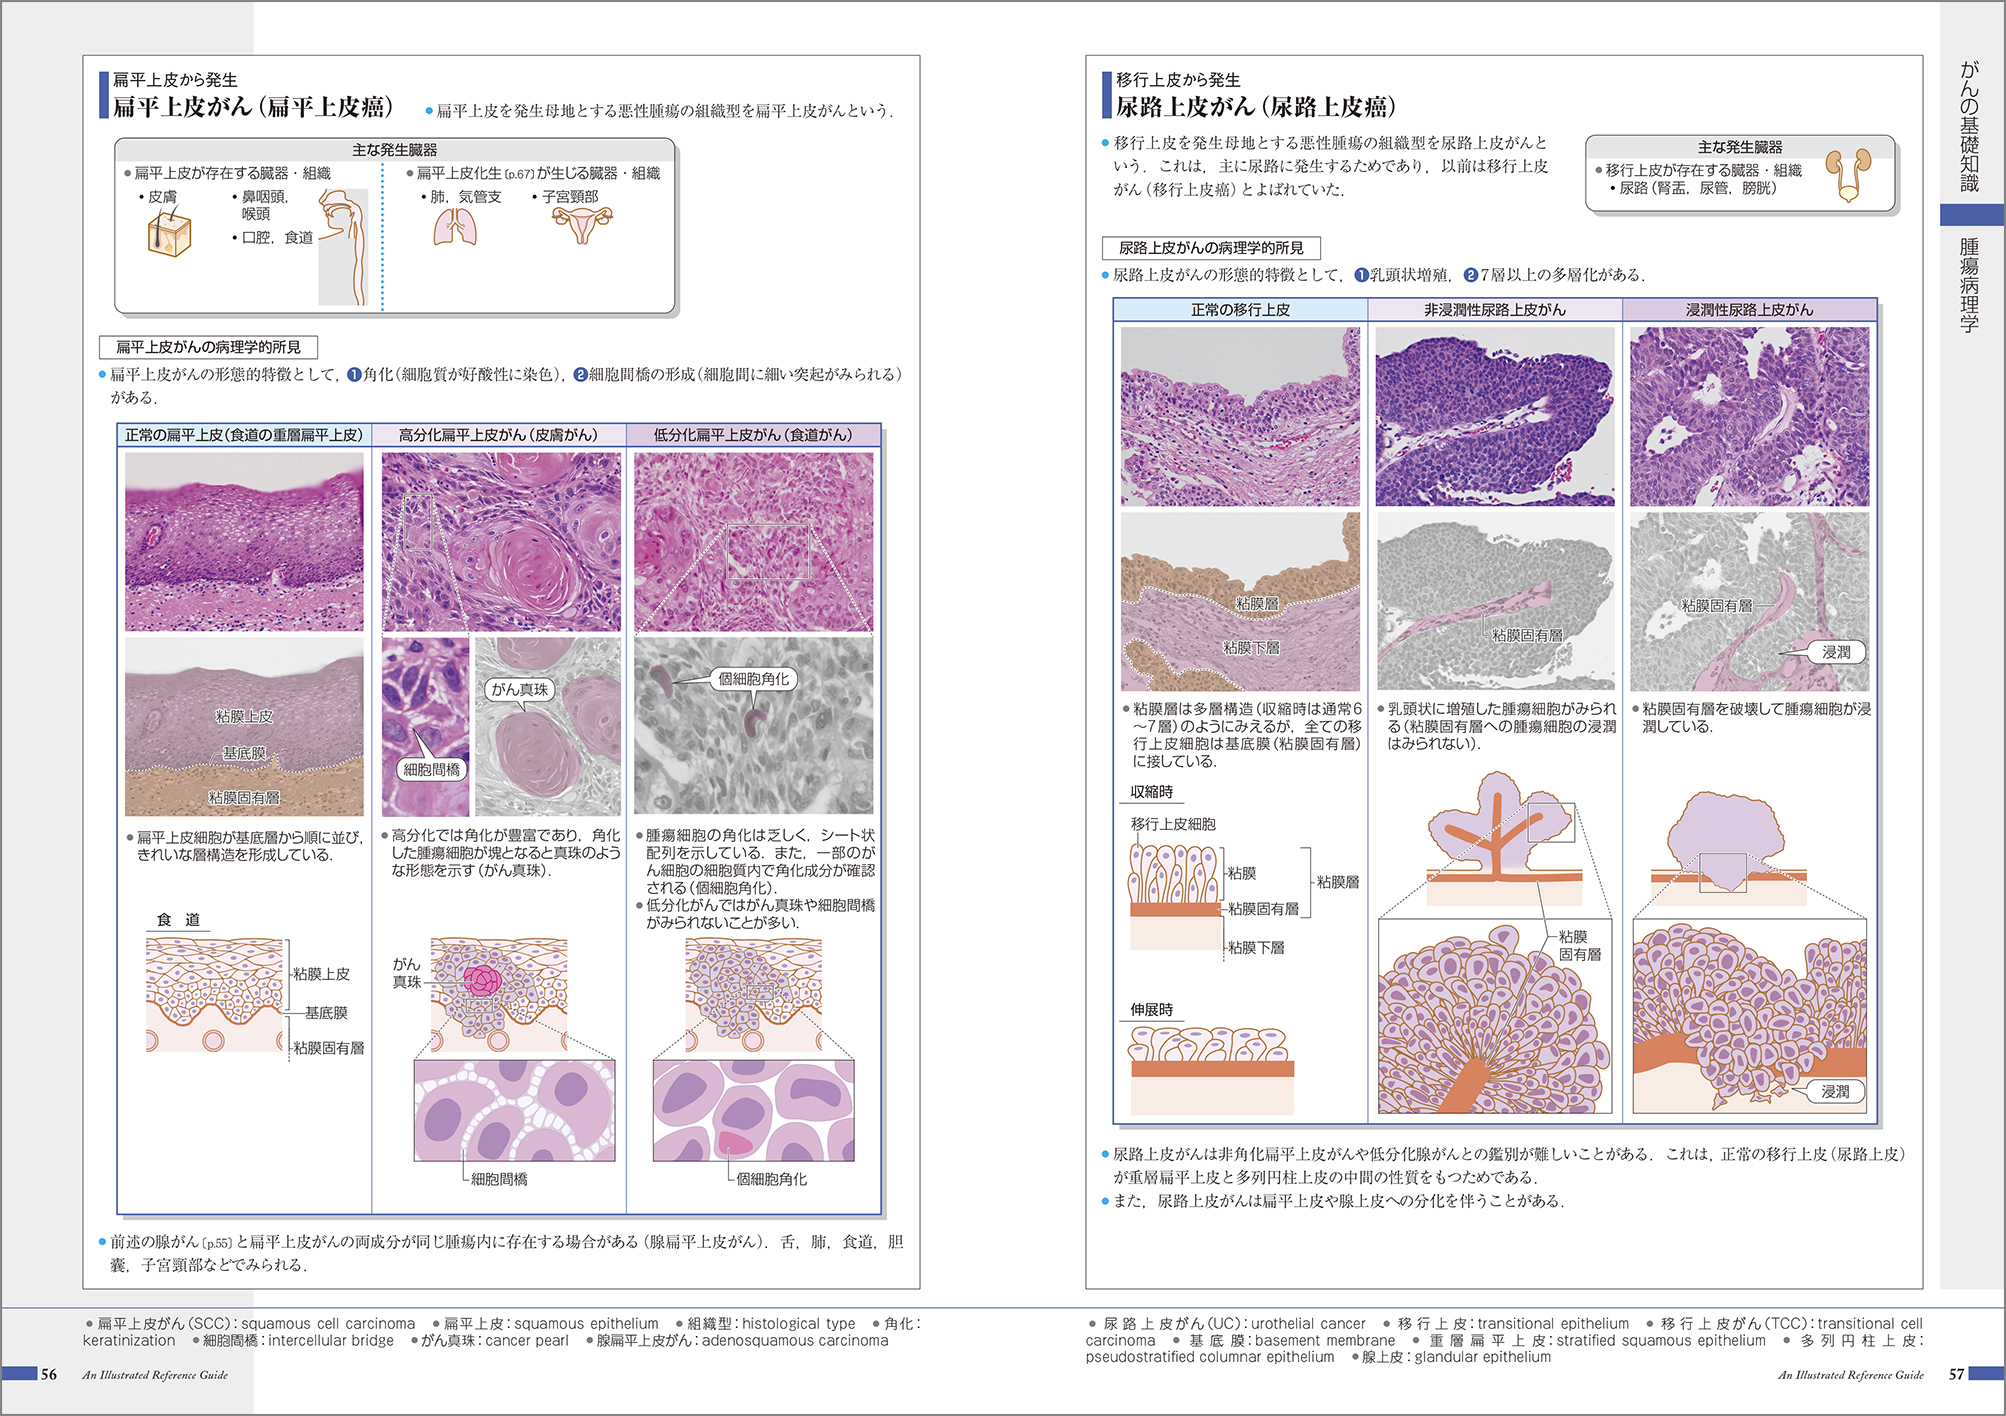 『がんがみえる』 紙面イメージ
病理学 腫瘍病理
扁平上皮癌 扁平上皮がん 尿路上皮がん
移行上皮癌